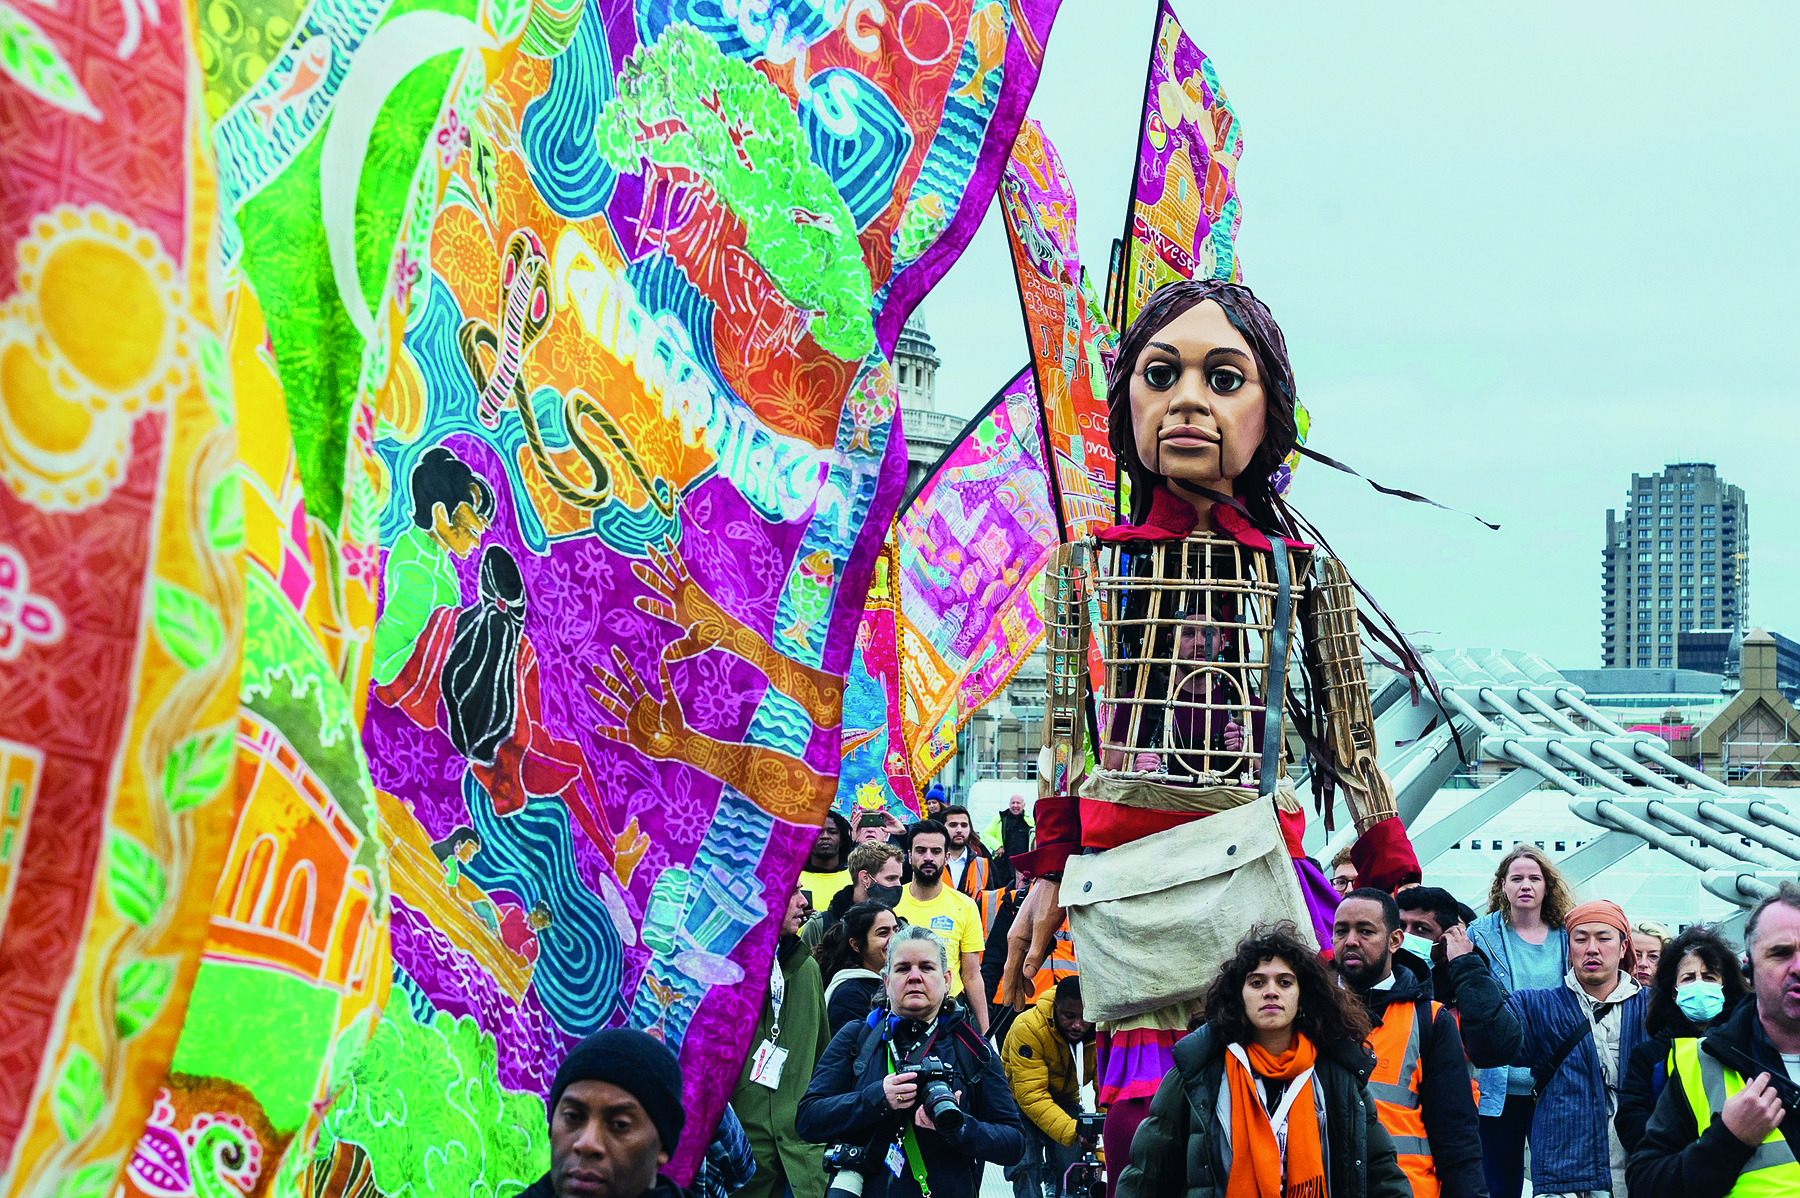 Imagem: Fotografia. Pessoas carregando um grande fantoche de uma criança. Ao redor, bandeiras com desenhos coloridos. Fim da imagem.